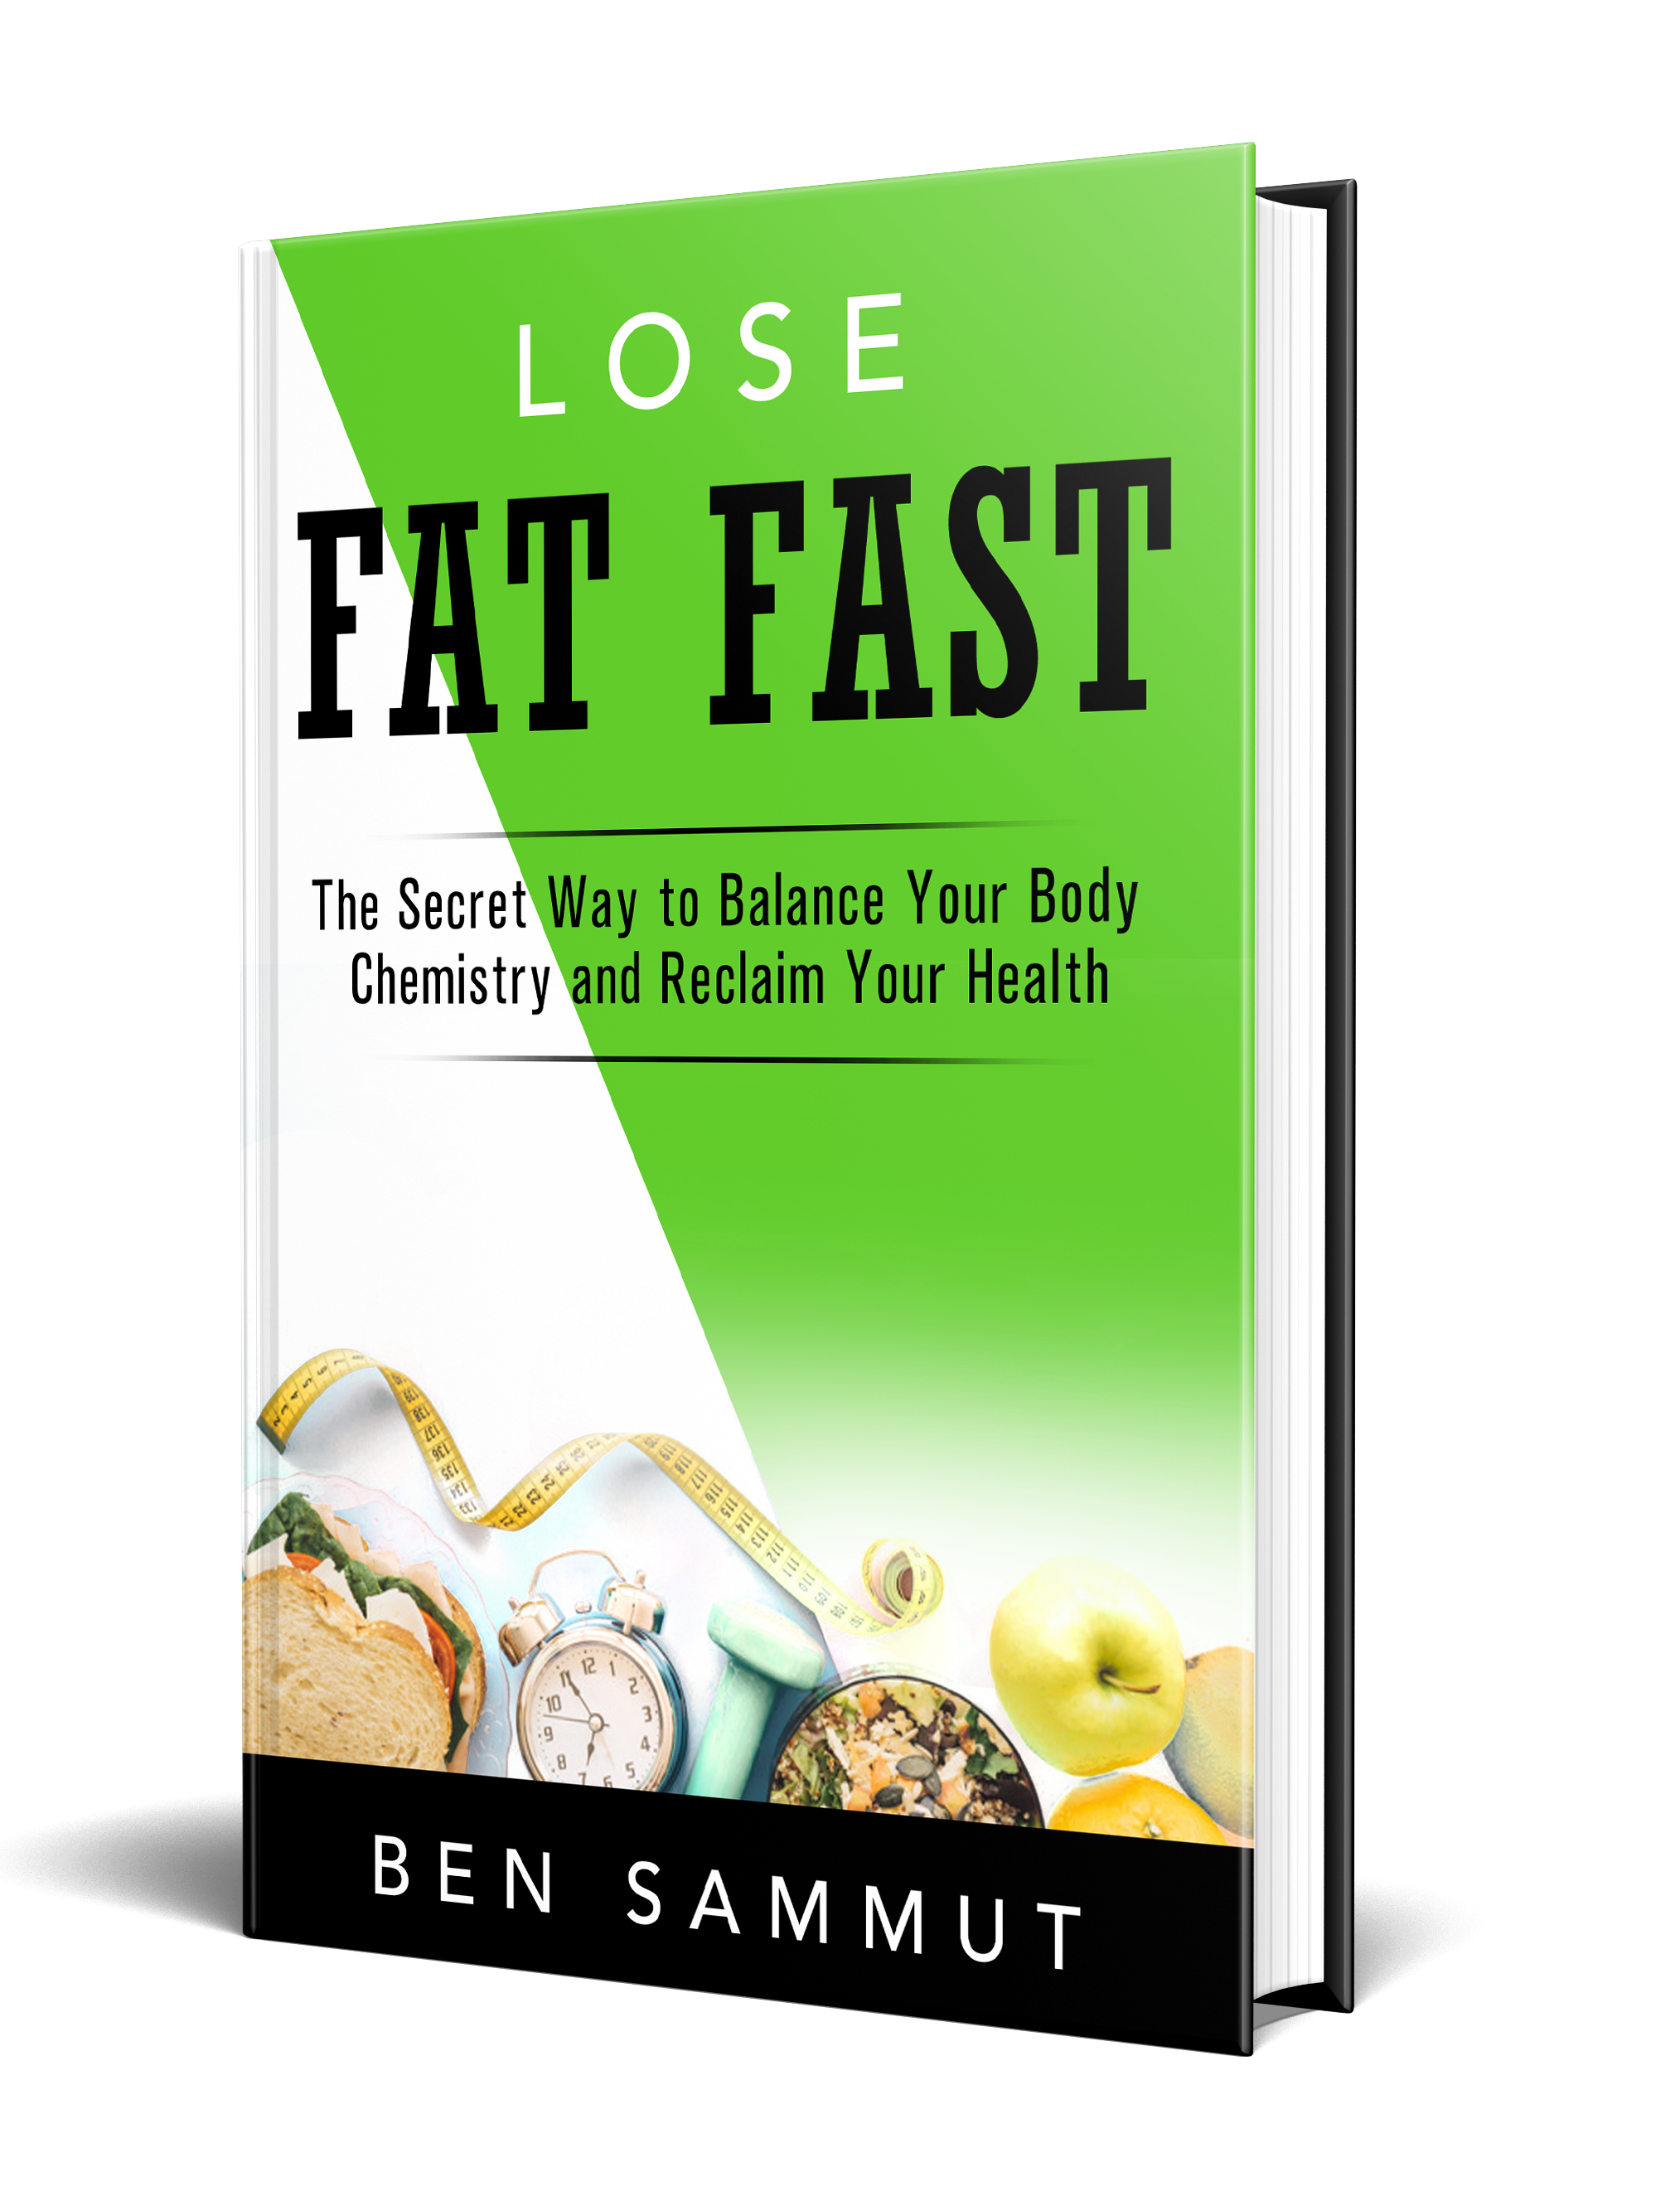 Living Lean 'Lose Fat Fast' E-Book